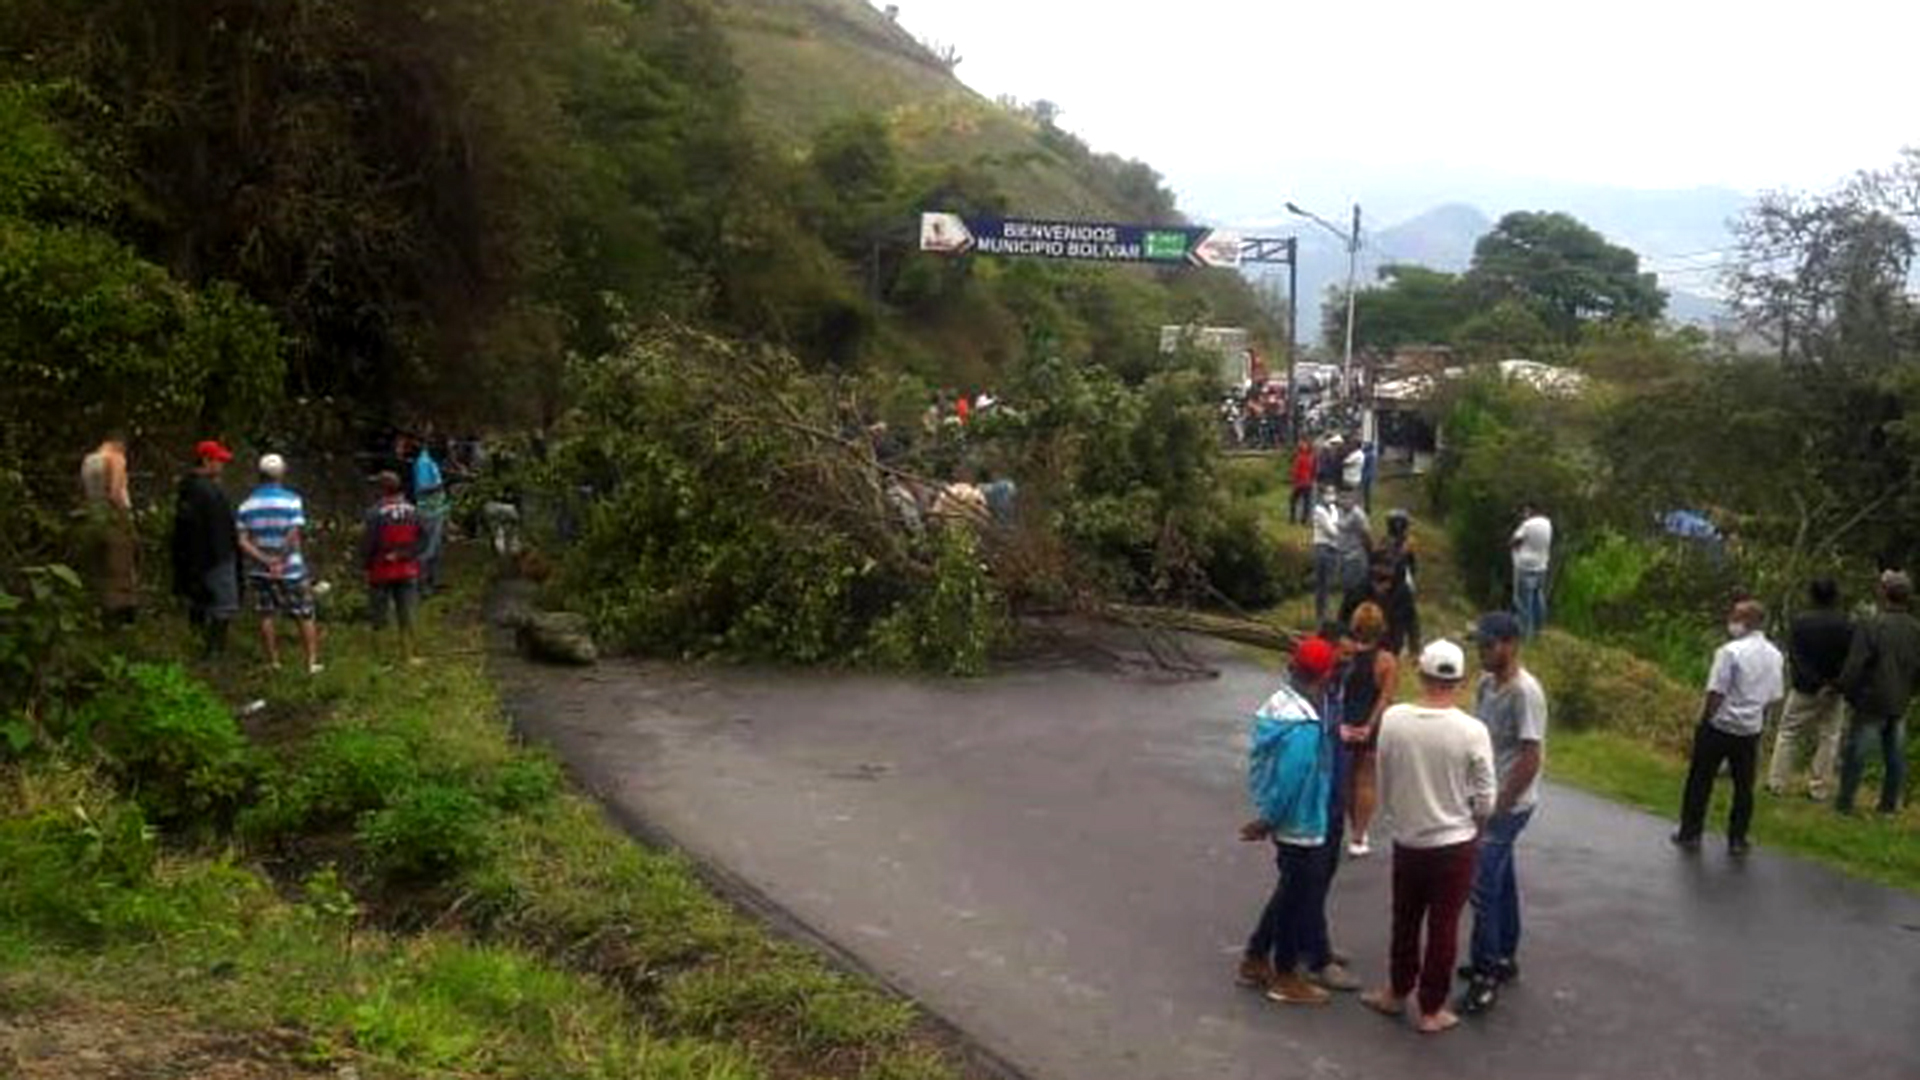 Los pobladores manifestaron que cerrarán los accesos a la carretera (Noticias Tachirenses)